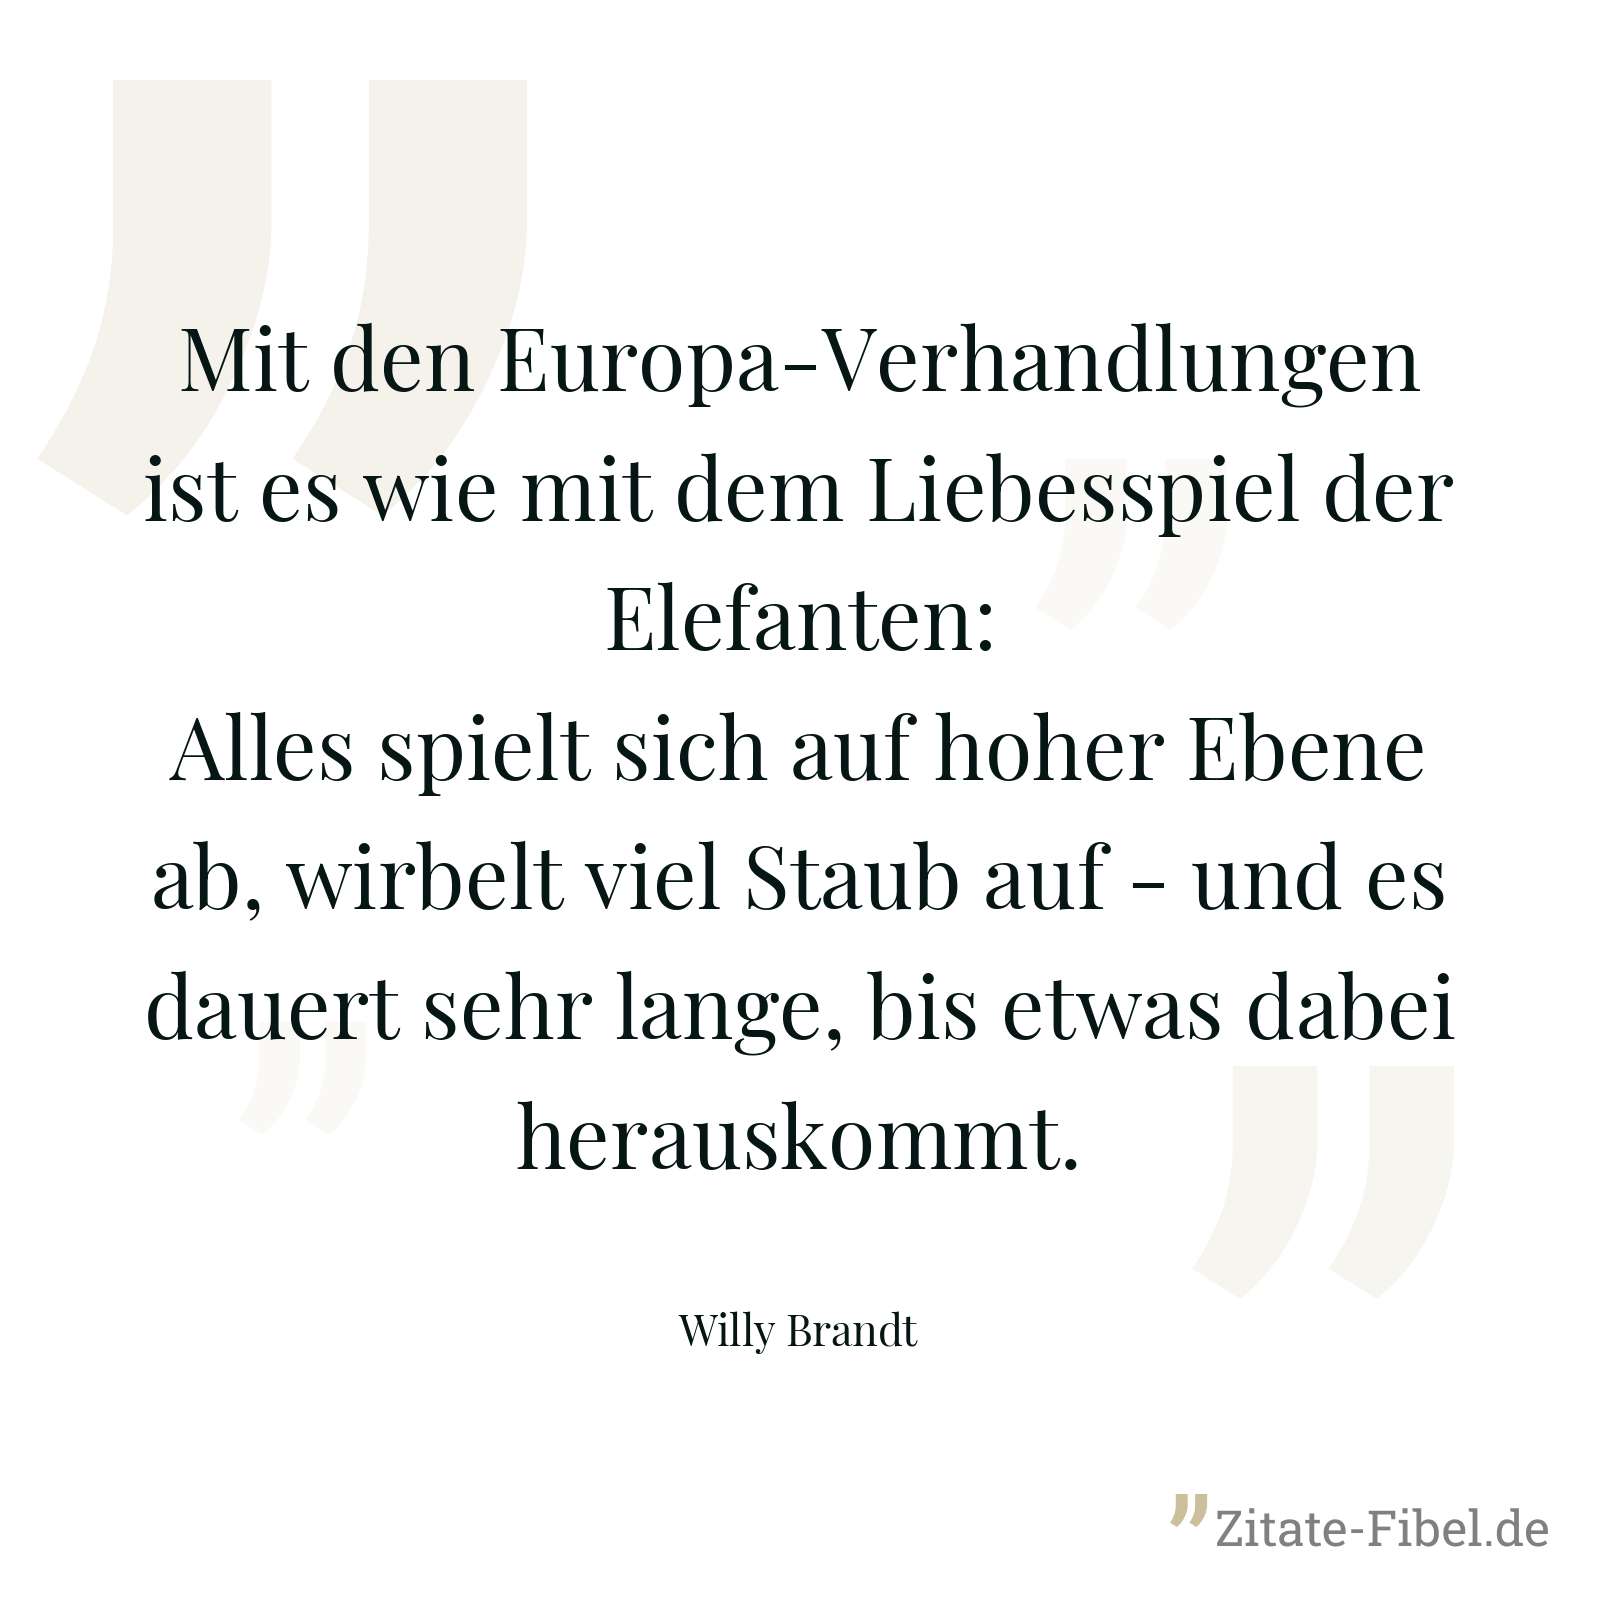 Mit den Europa-Verhandlungen ist es wie mit dem Liebesspiel der Elefanten: Alles spielt sich auf hoher Ebene ab, wirbelt viel Staub auf - und es dauert sehr lange, bis etwas dabei herauskommt. - Willy Brandt